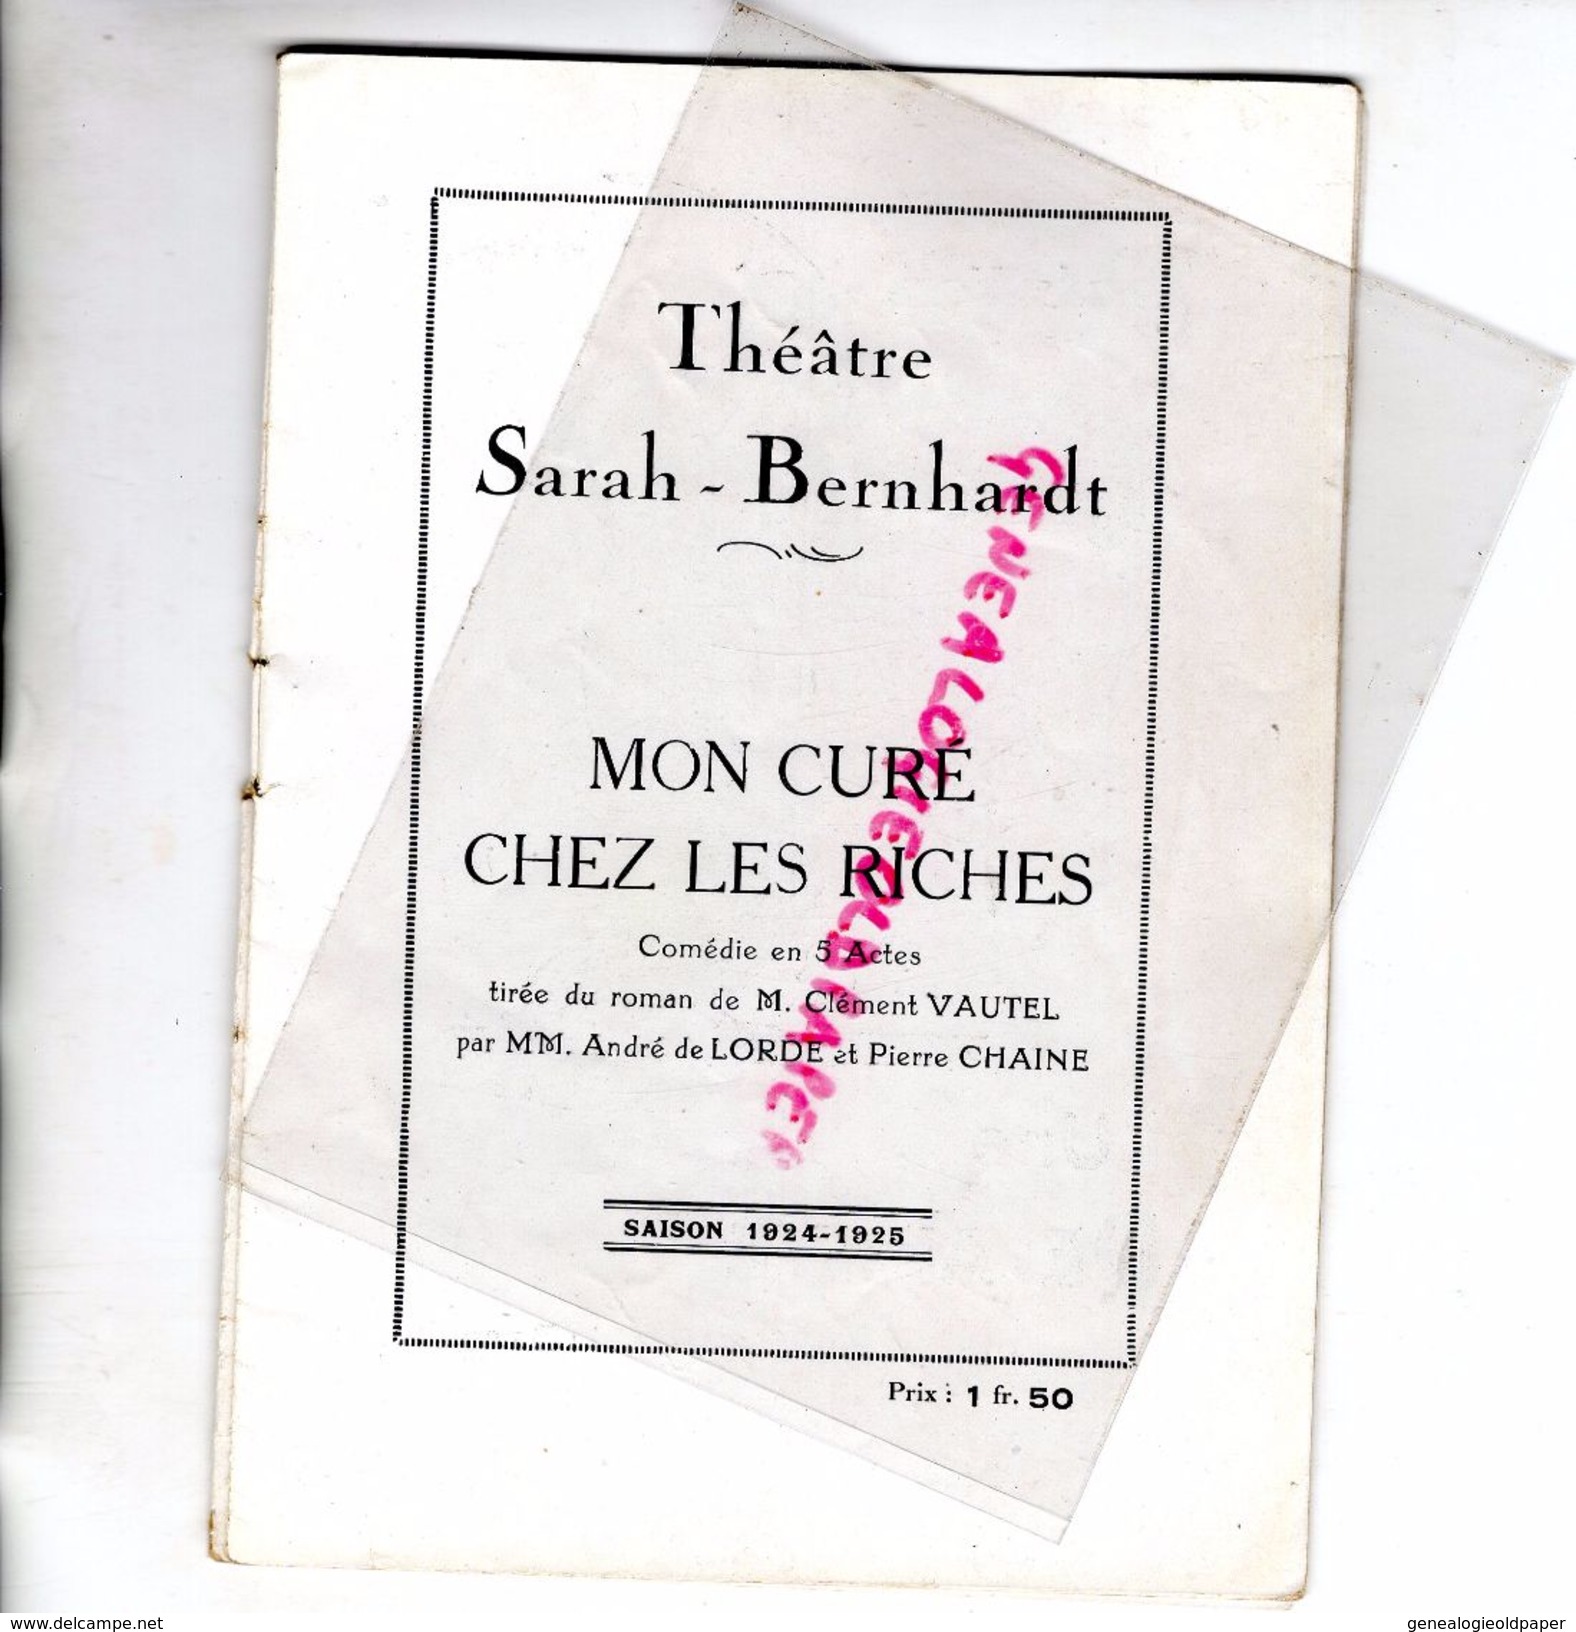 75- PARIS-PROGRAMME THEATRE SARAH BERNHARDT- MON CURE CHEZ LES RICHES-CLEMENT VAUTEL-DE LORDE-CHAINE-1924-25-DELAHAYE- - Programs